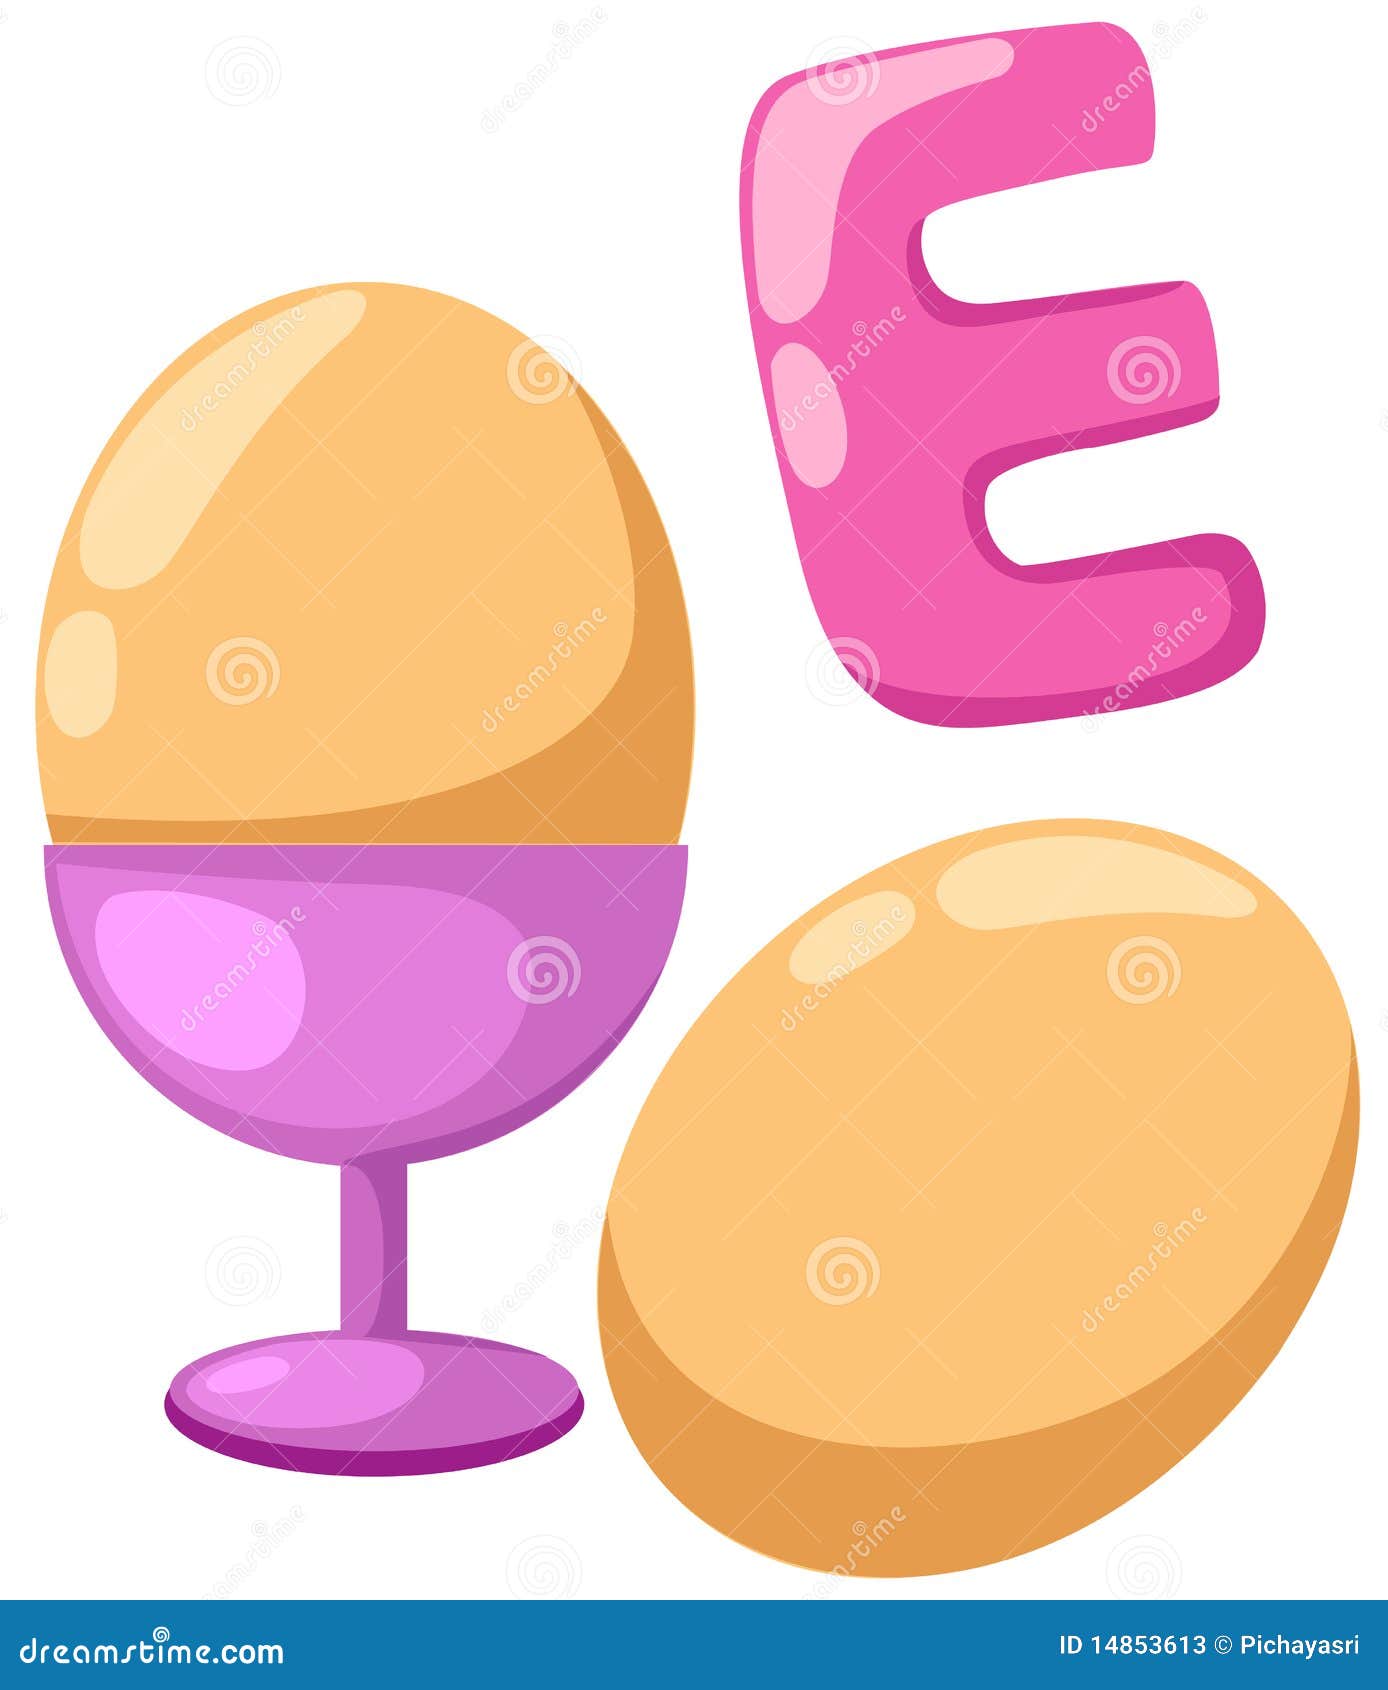 Как по английски будет яйцо. Яйцо на английском. Английский алфавит яйца. Буквы на яйцах. Буква e английская яйцо.